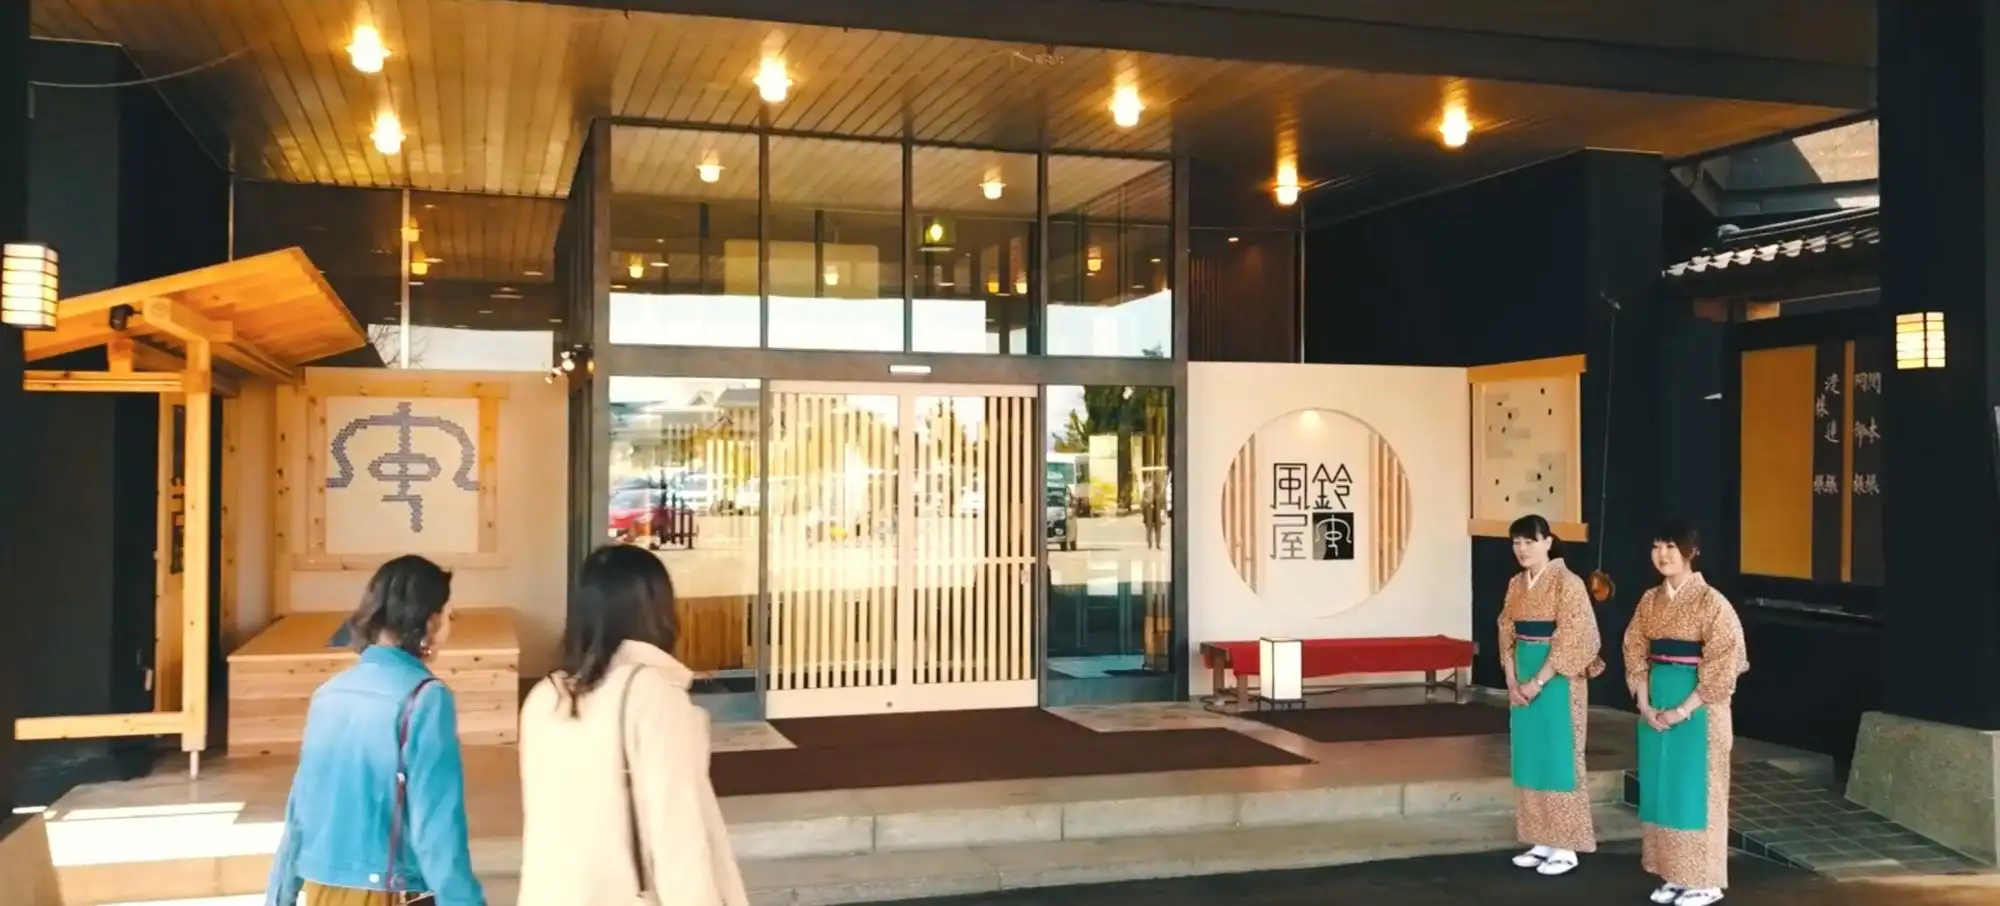 新潟観光に訪れたなら絶対に外せない温泉旅館「風鈴屋」。女性に人気の